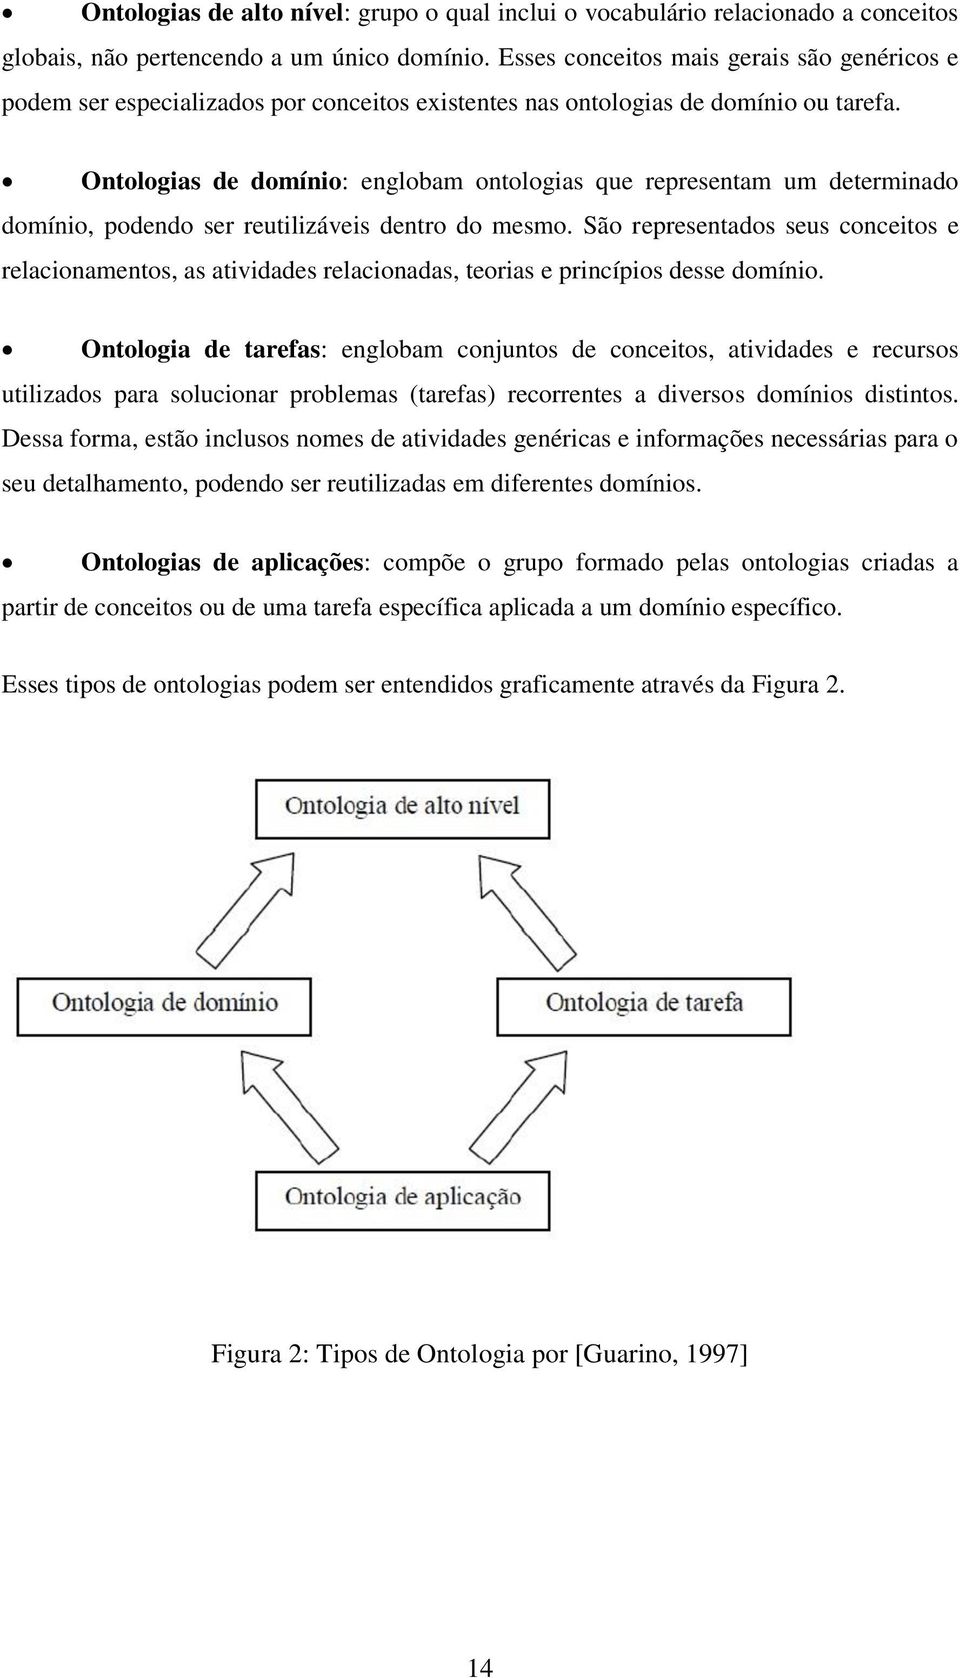 Ontologias de domínio: englobam ontologias que representam um determinado domínio, podendo ser reutilizáveis dentro do mesmo.